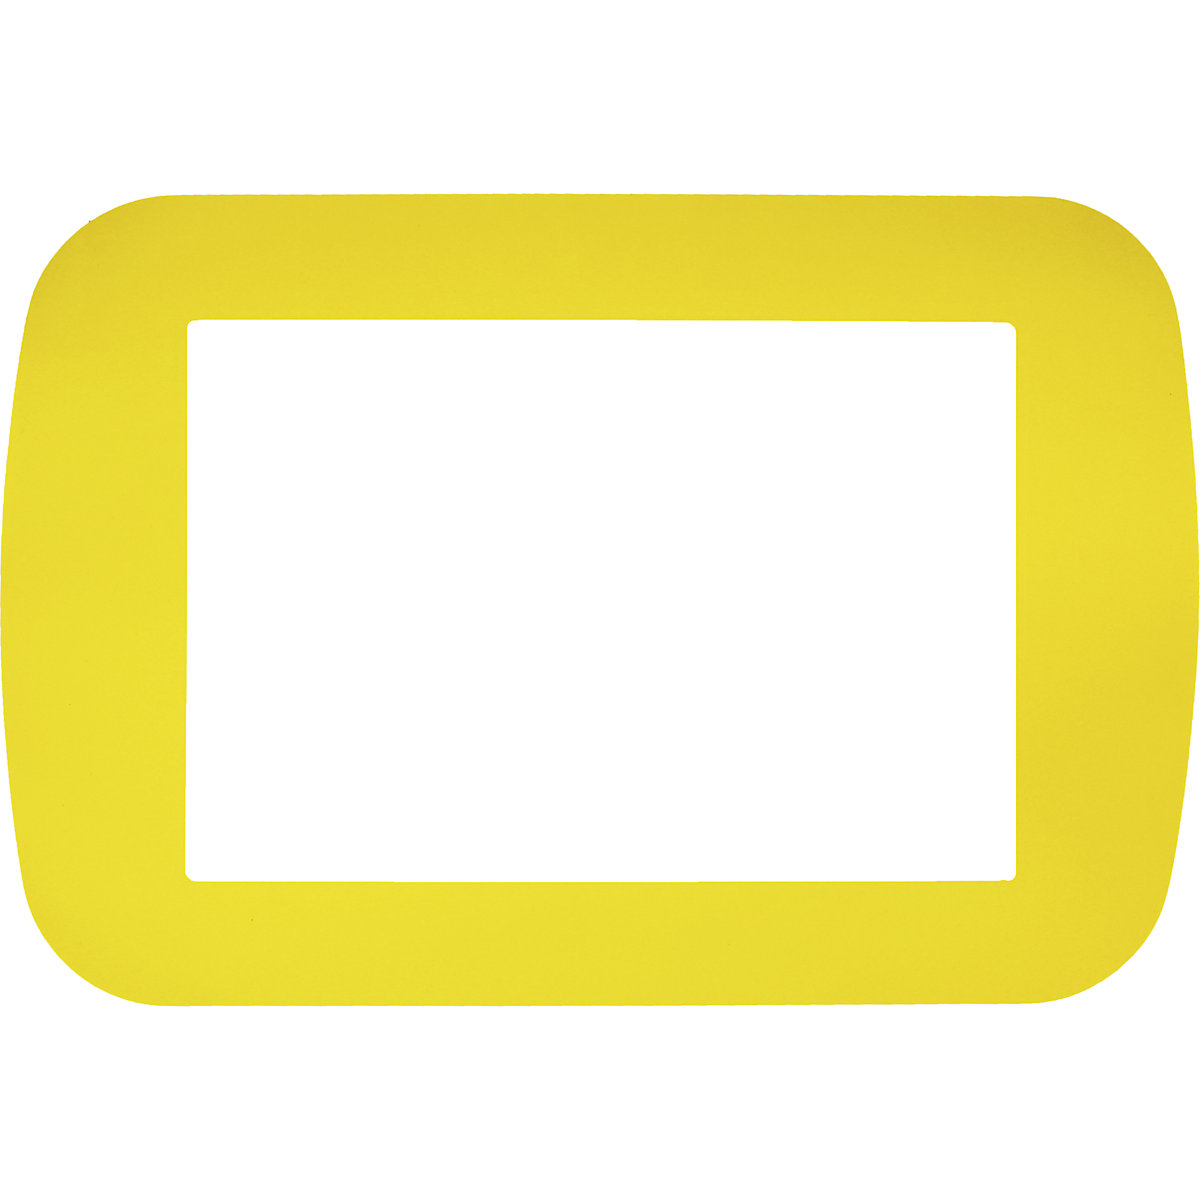 Padlókeret, DIN A4 formátum, cs. e. 50 db, sárga